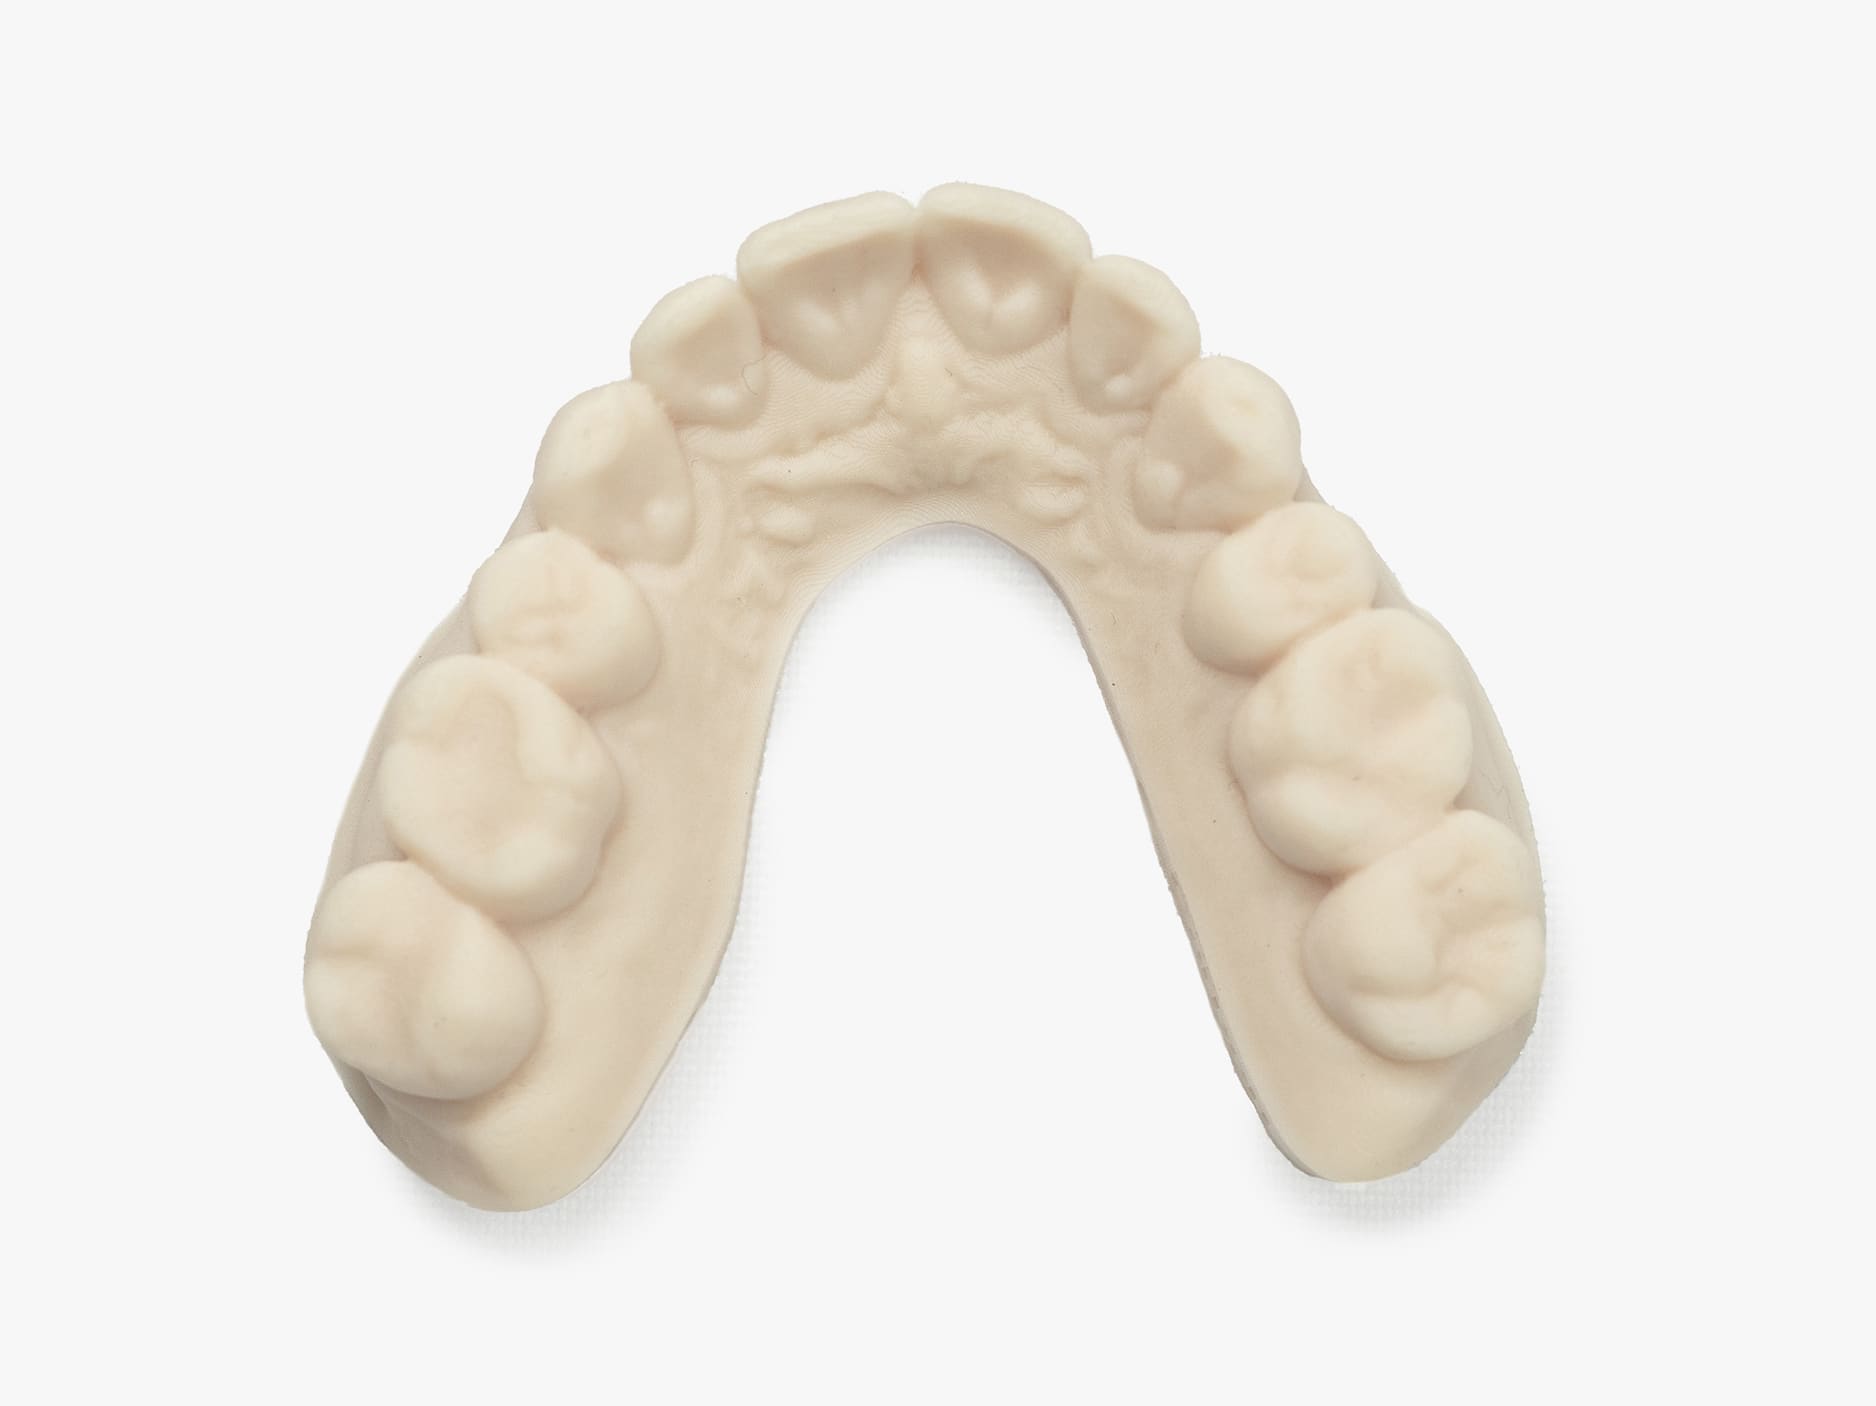 DPR 10 dental model